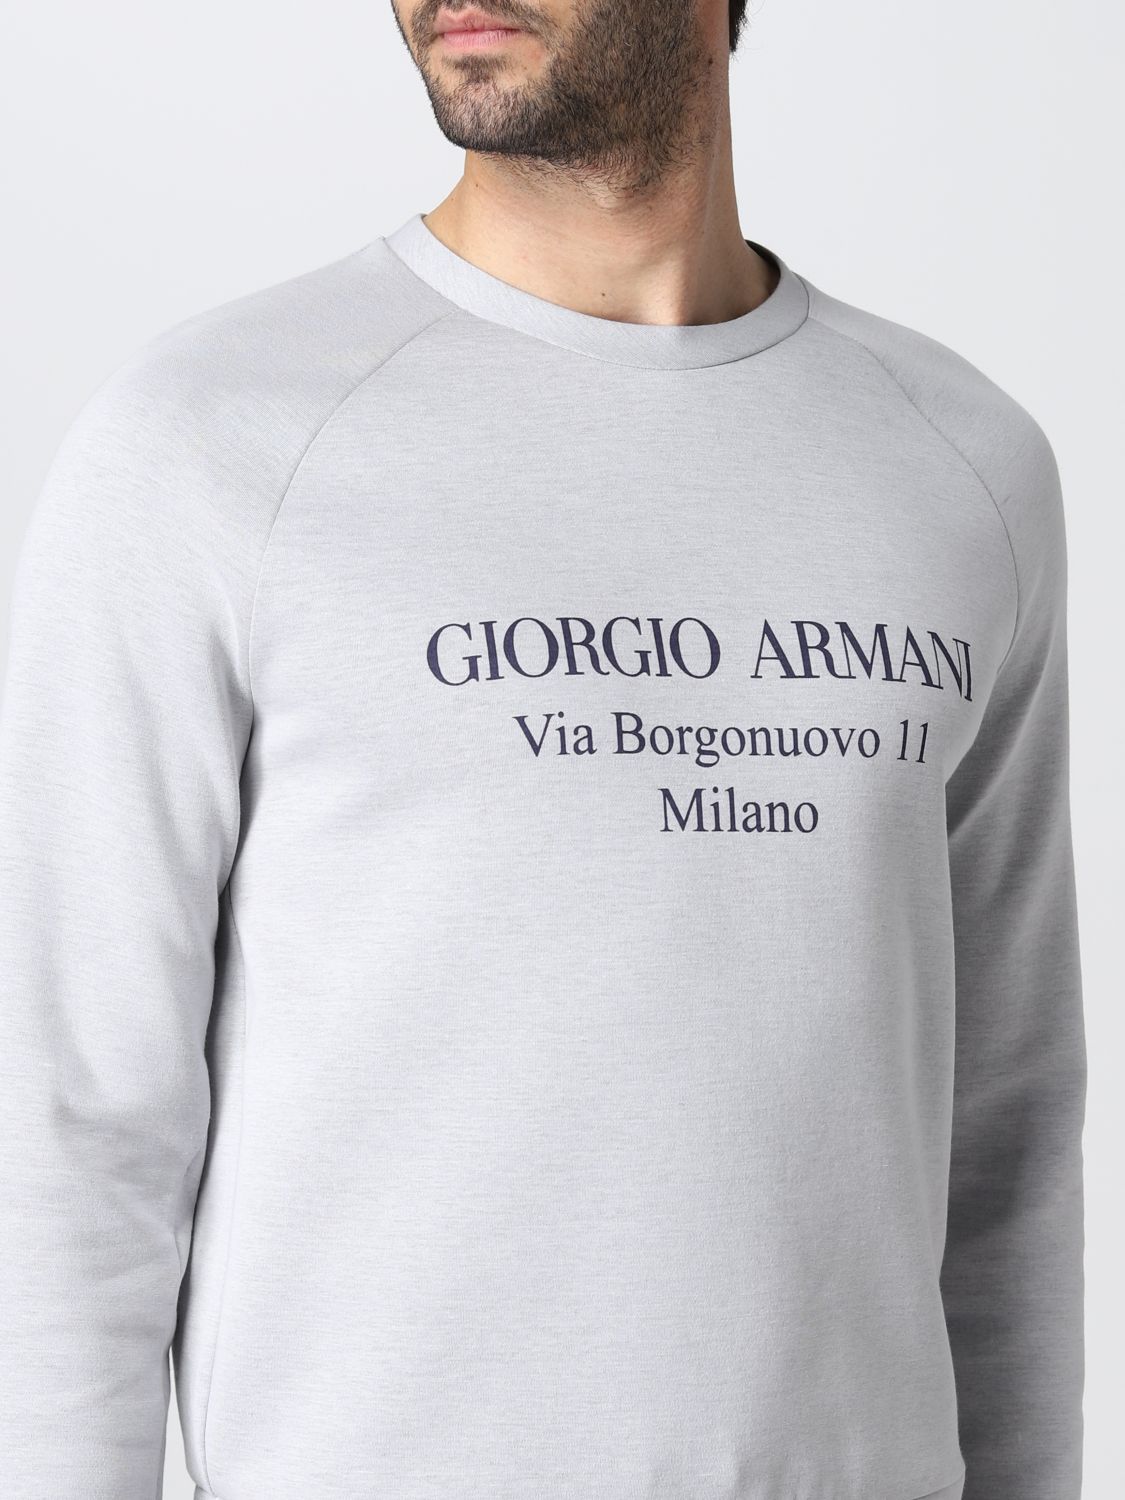 スウェットシャツ ジョルジオ アルマーニ: スウェットシャツ Giorgio Armani メンズ グレー 5